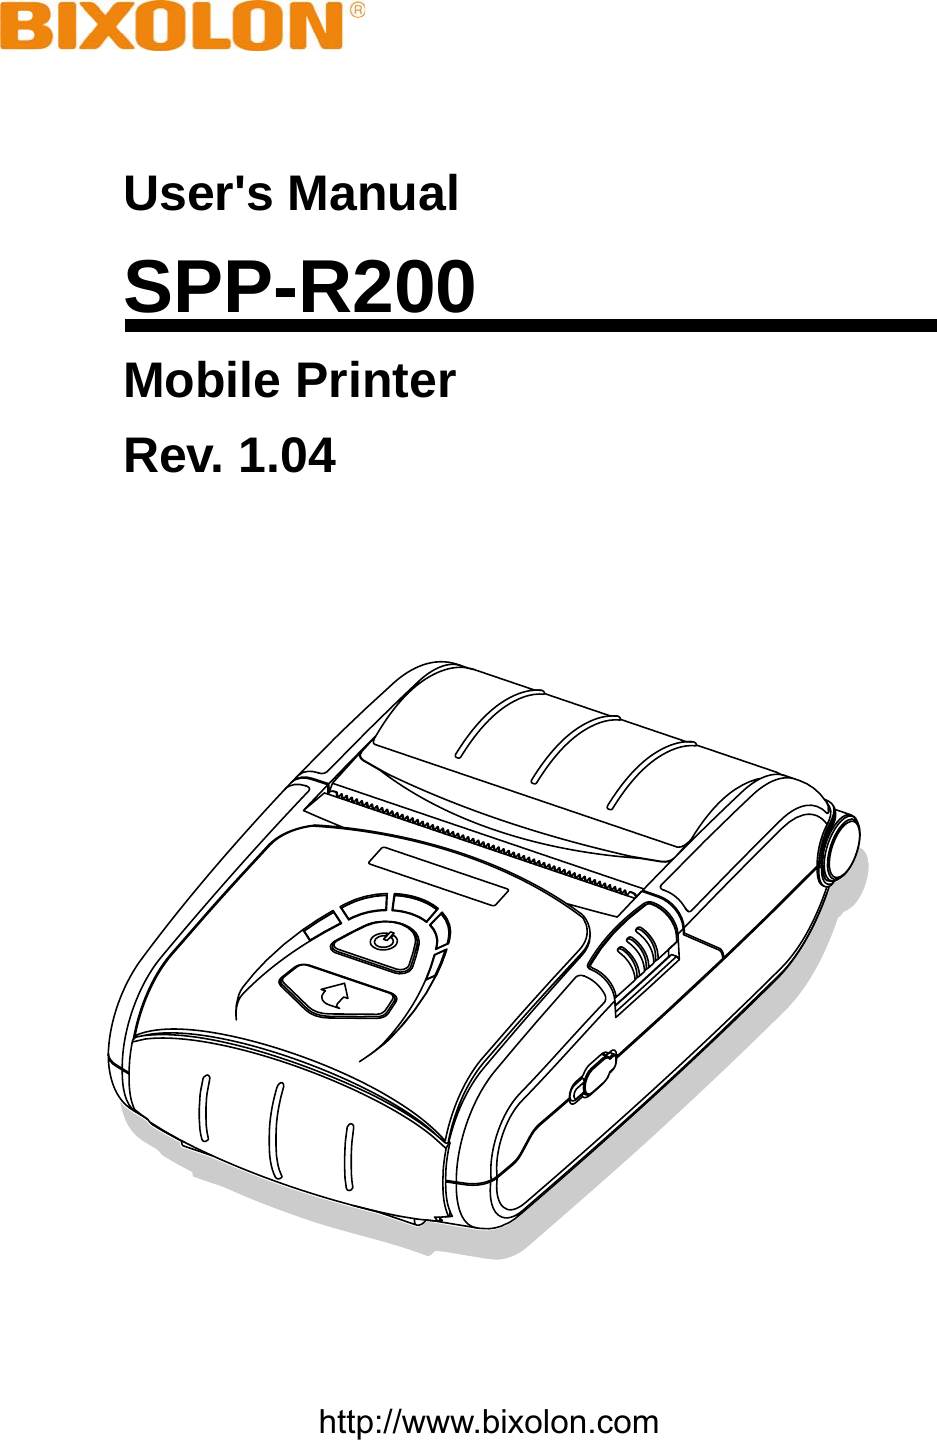    User&apos;s Manual SPP-R200 Mobile Printer Rev. 1.04      http://www.bixolon.com 